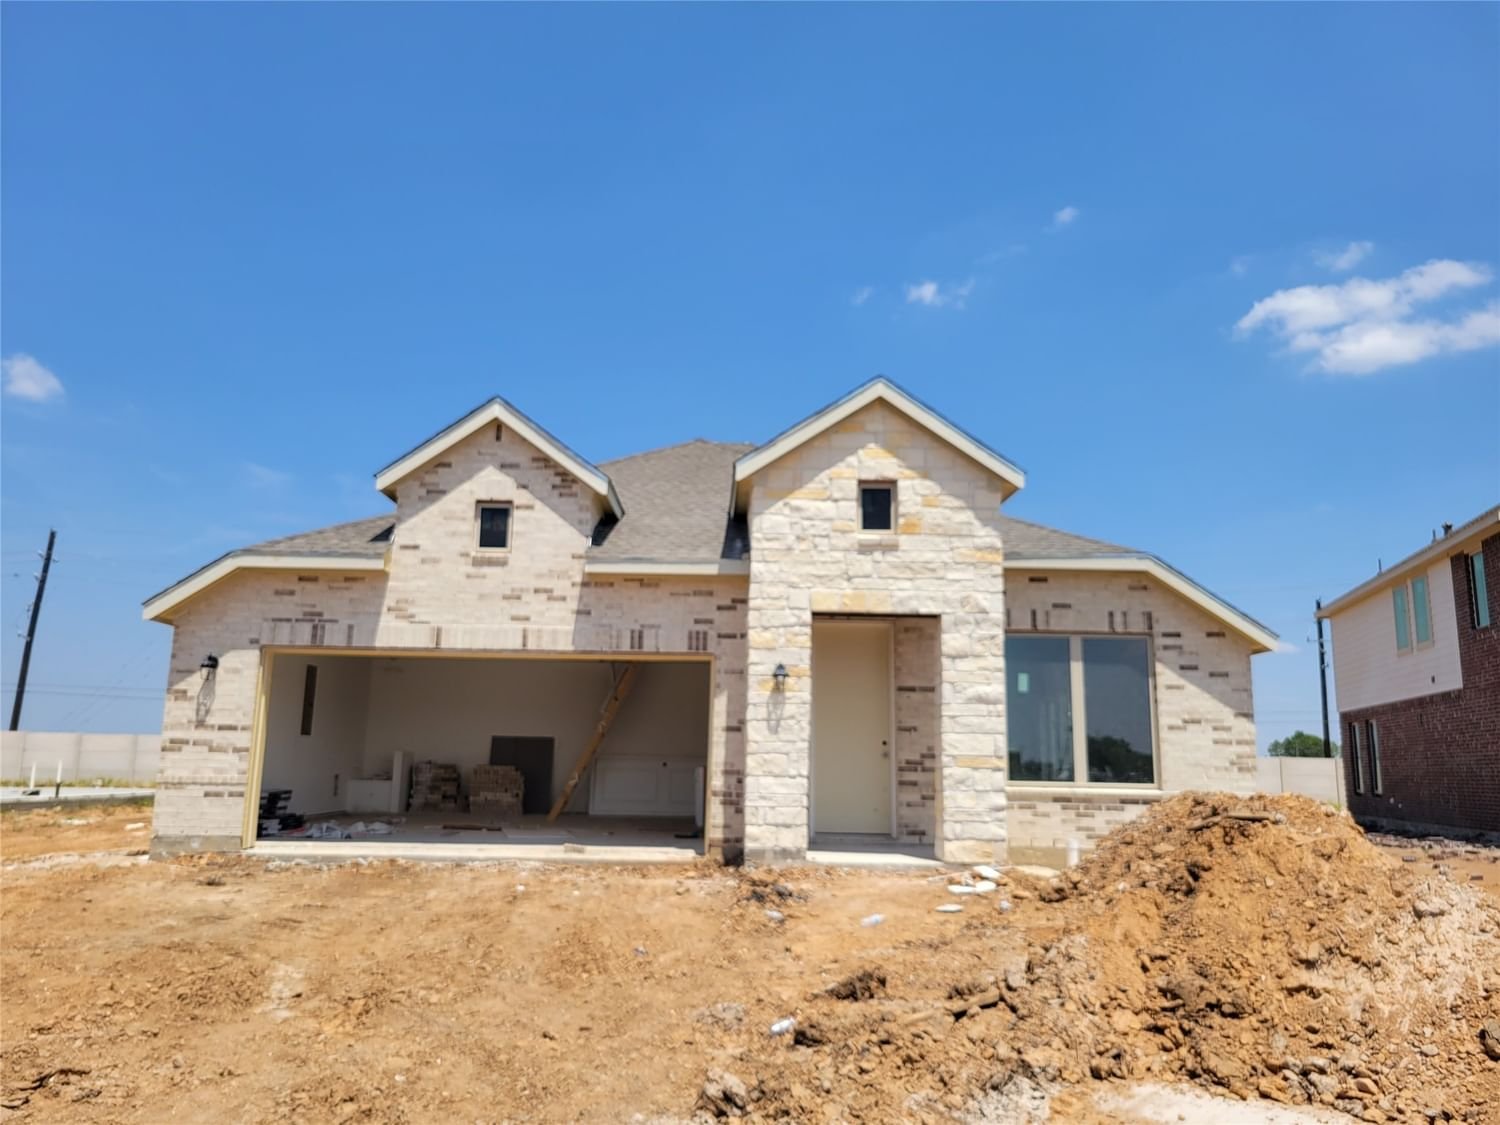 Real estate property located at 2015 Live Springs, Fort Bend, Miller's Pond, Rosenberg, TX, US